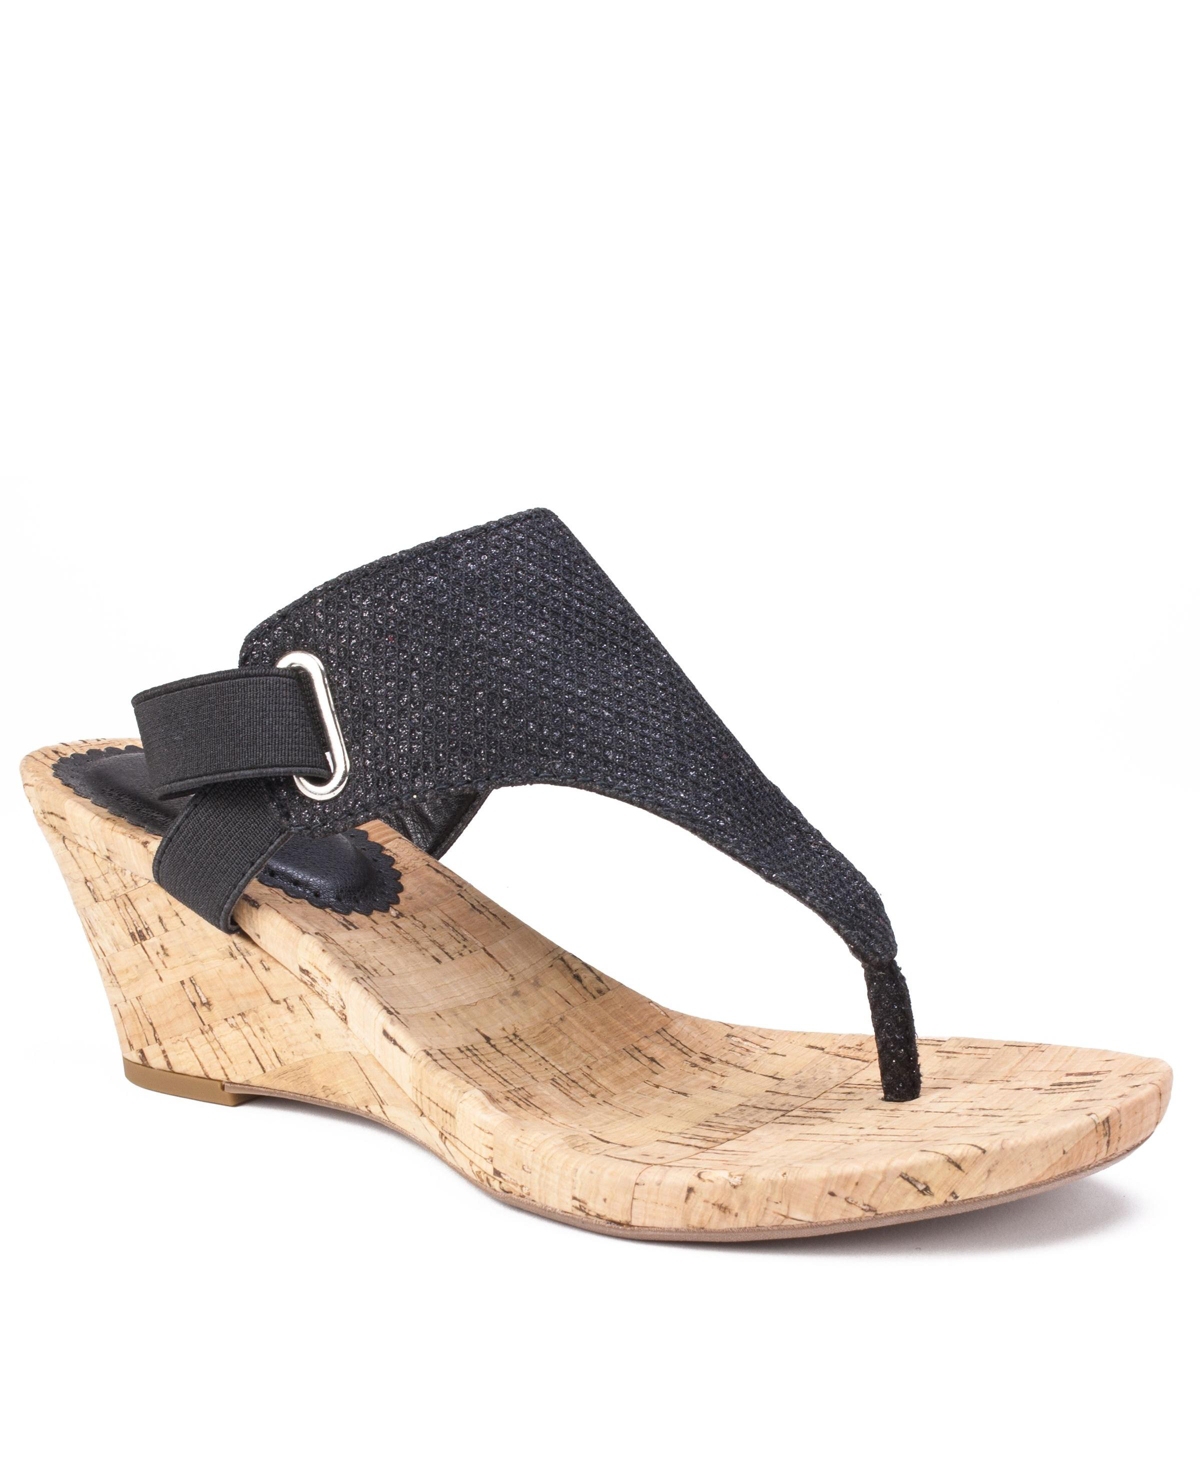 Women's All Good Thong Wedge Sandals - Light Gold-Tone, Glitter